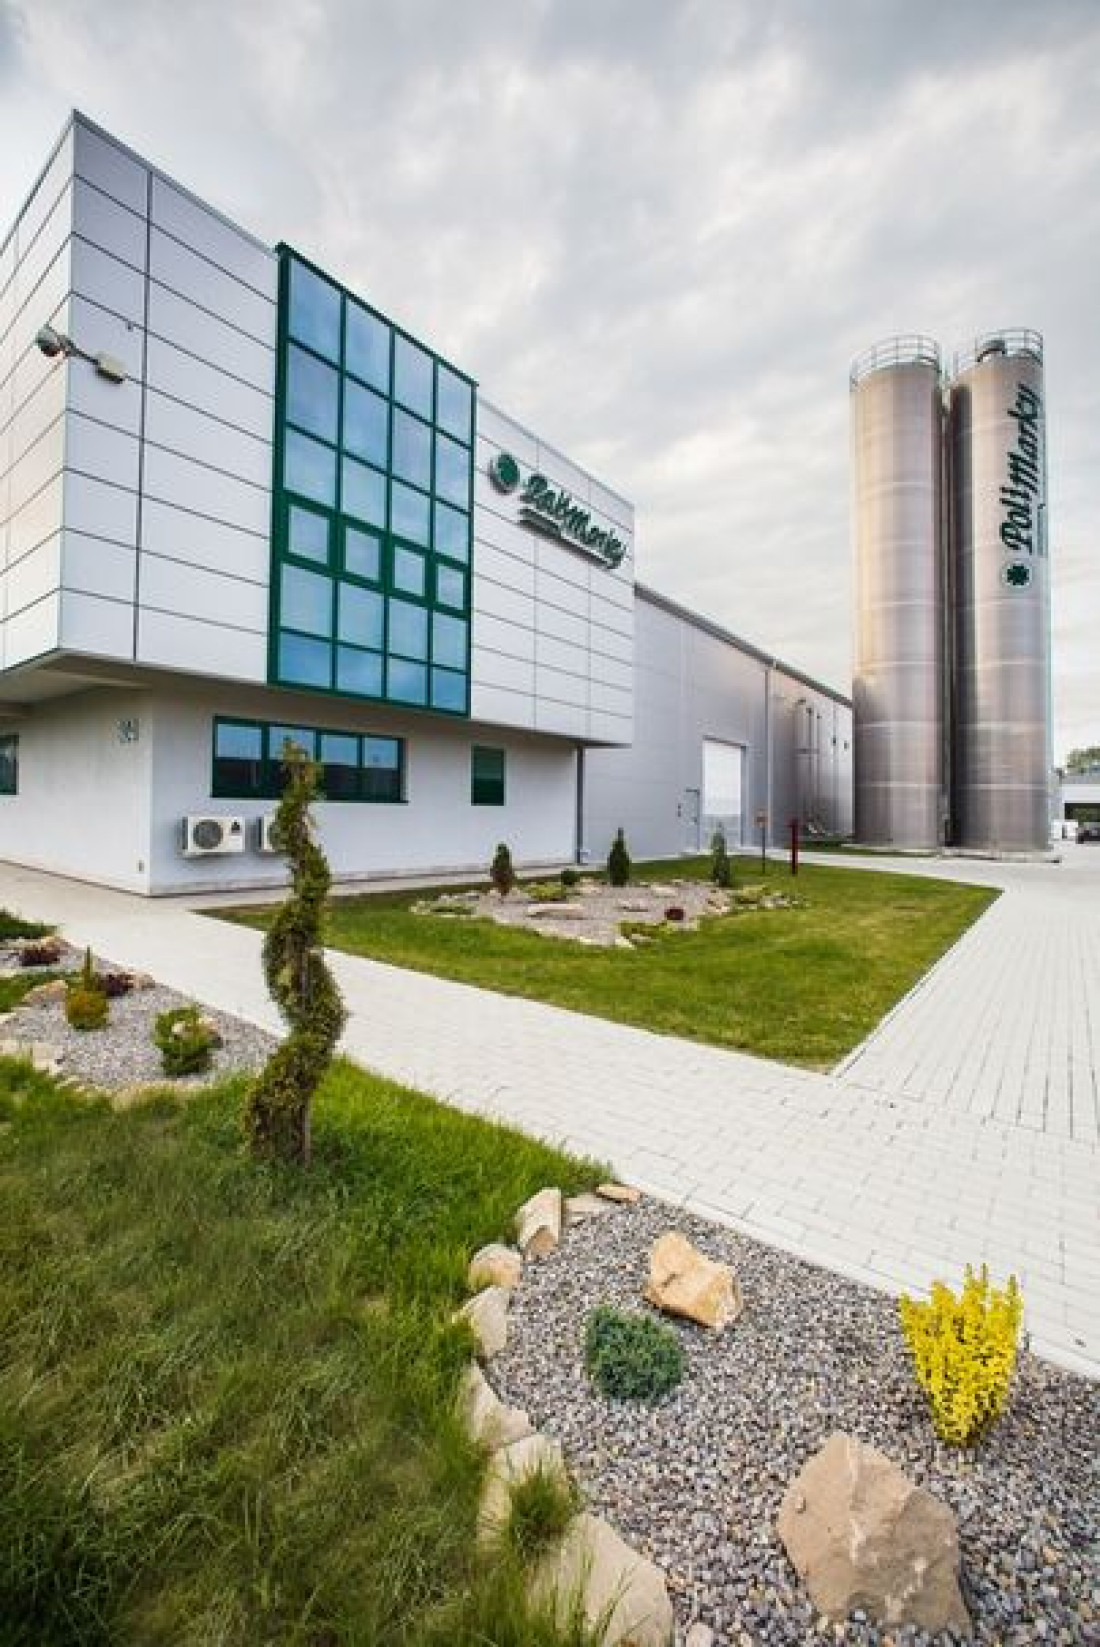 Polimarky rozszerzy produkcję w Rogoźnicy - planowane zakończenie inwestycji w 2015 r.